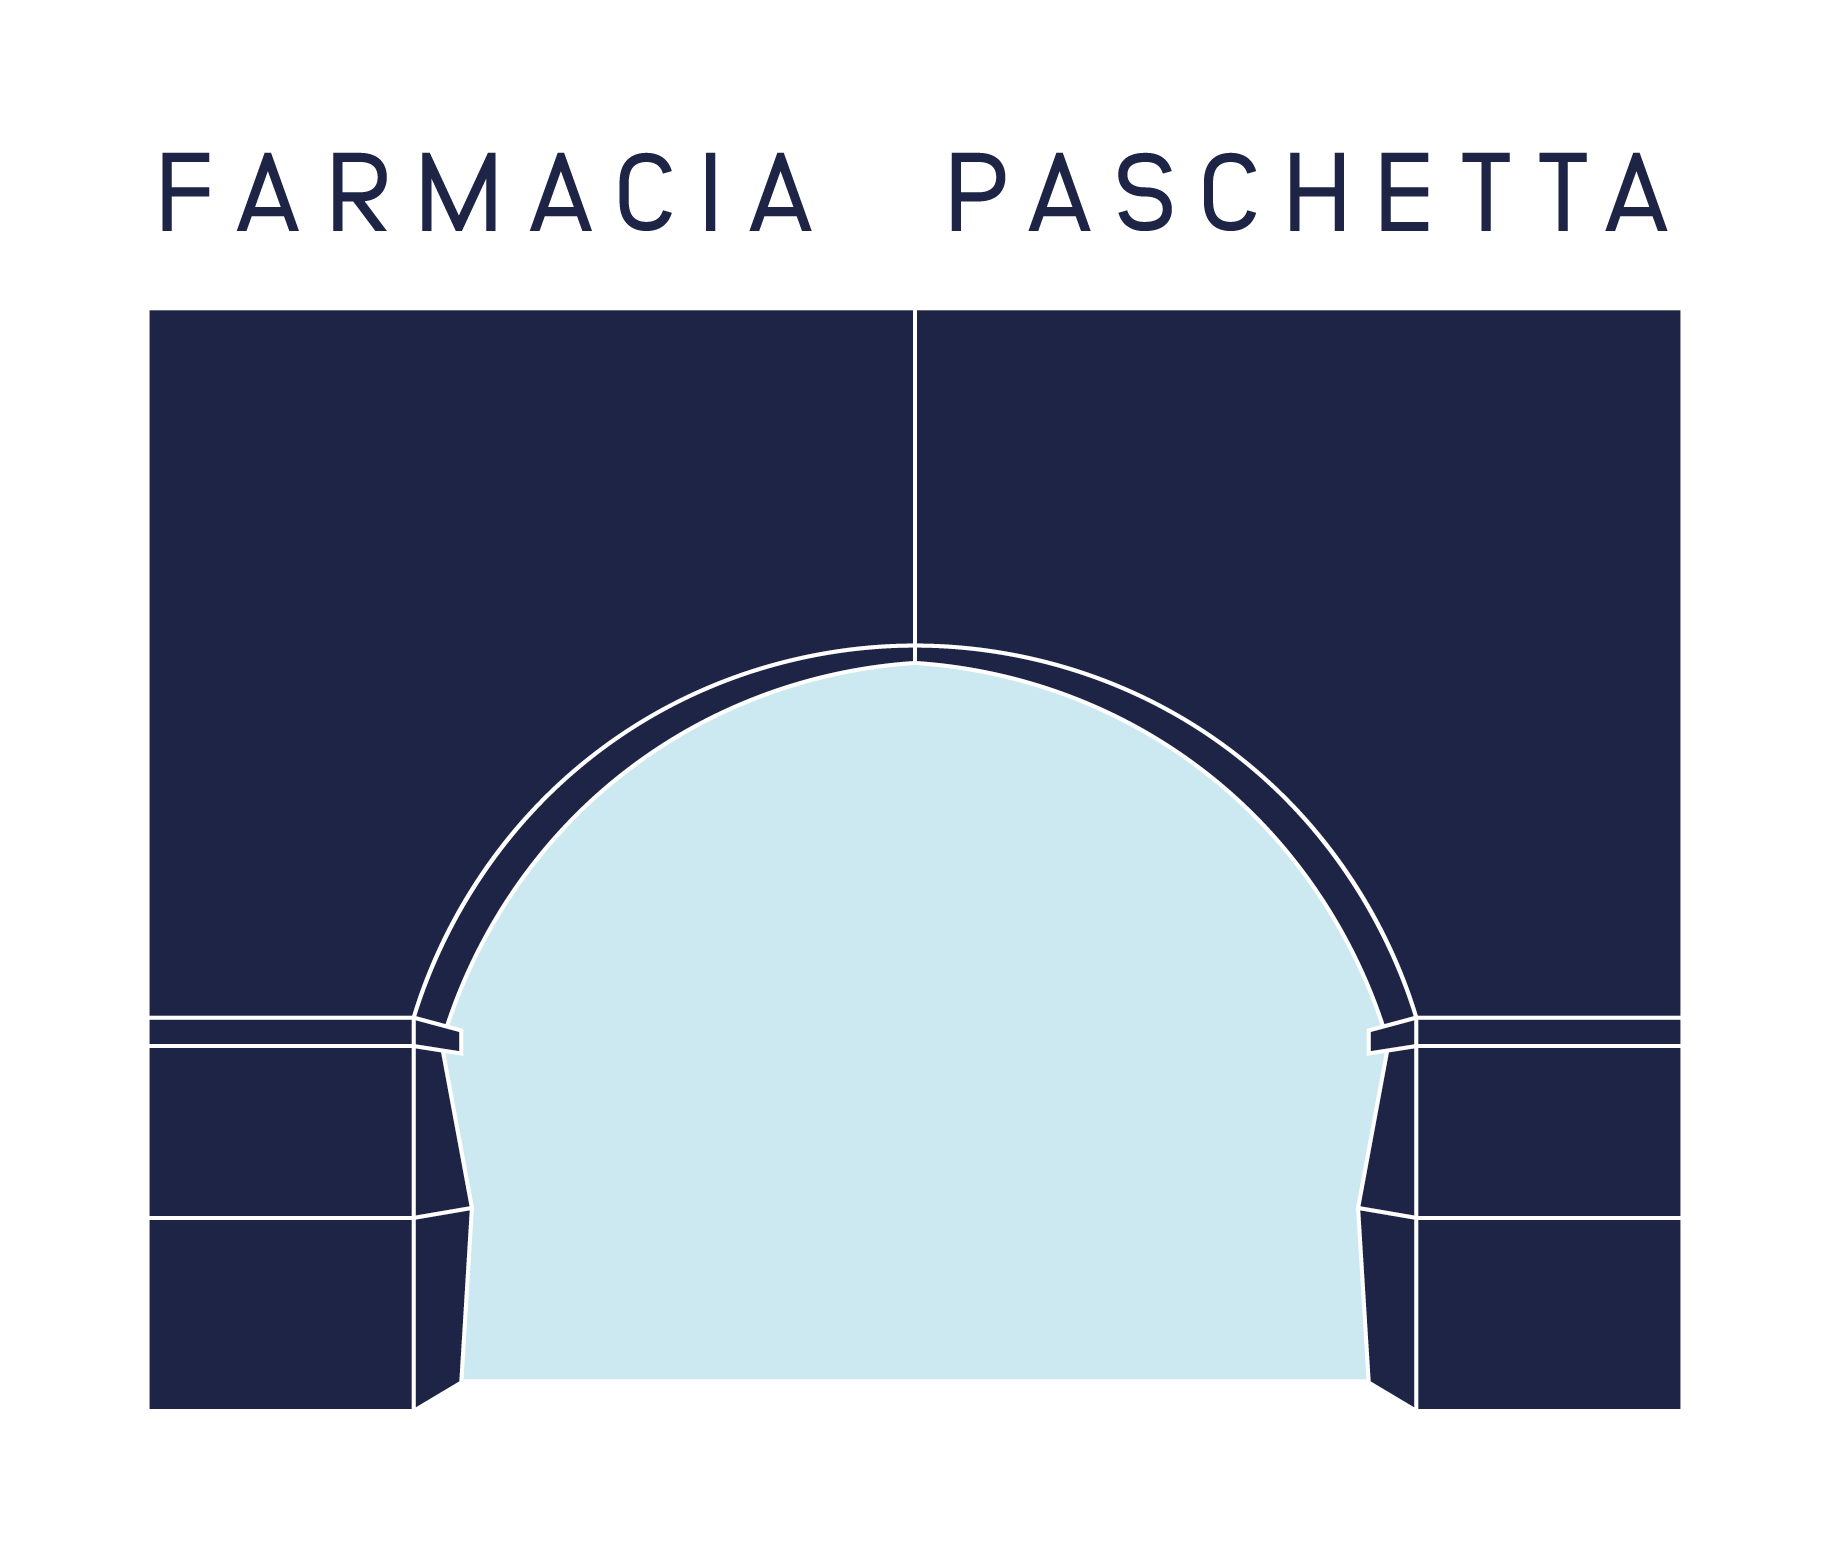 farmacia-paschetta-savigliano-design-©-diego-cinquegrana-the-golden-torch-aimaproject-sa-logo